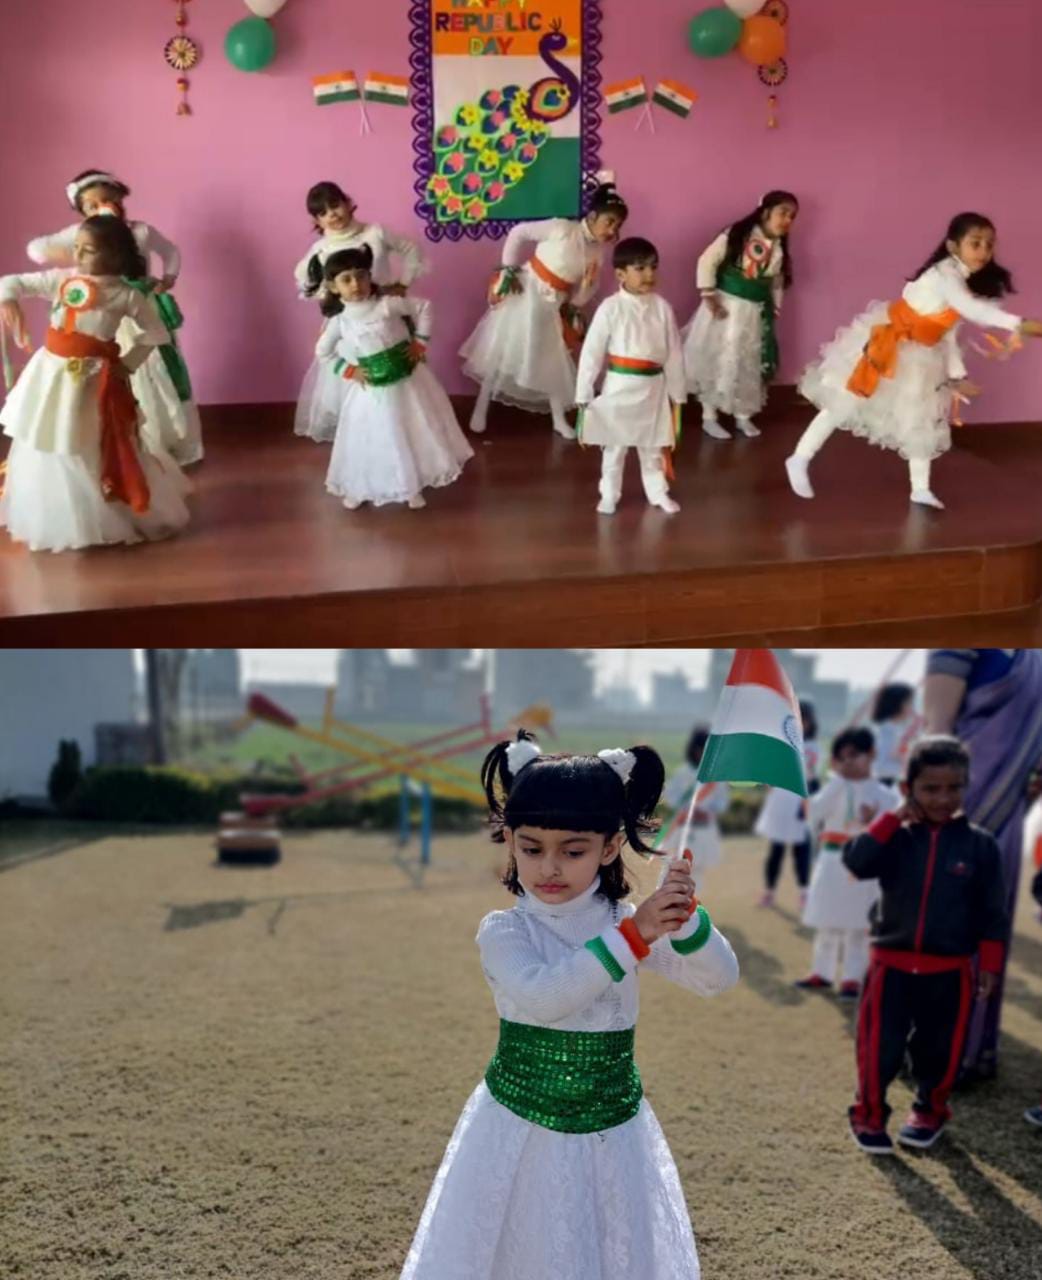 गणतंत्र दिवस के अवसर पर बचपन प्ले स्कूल के छोटे छोटे बच्चो ने किया बहुत प्यारा नृत्य 